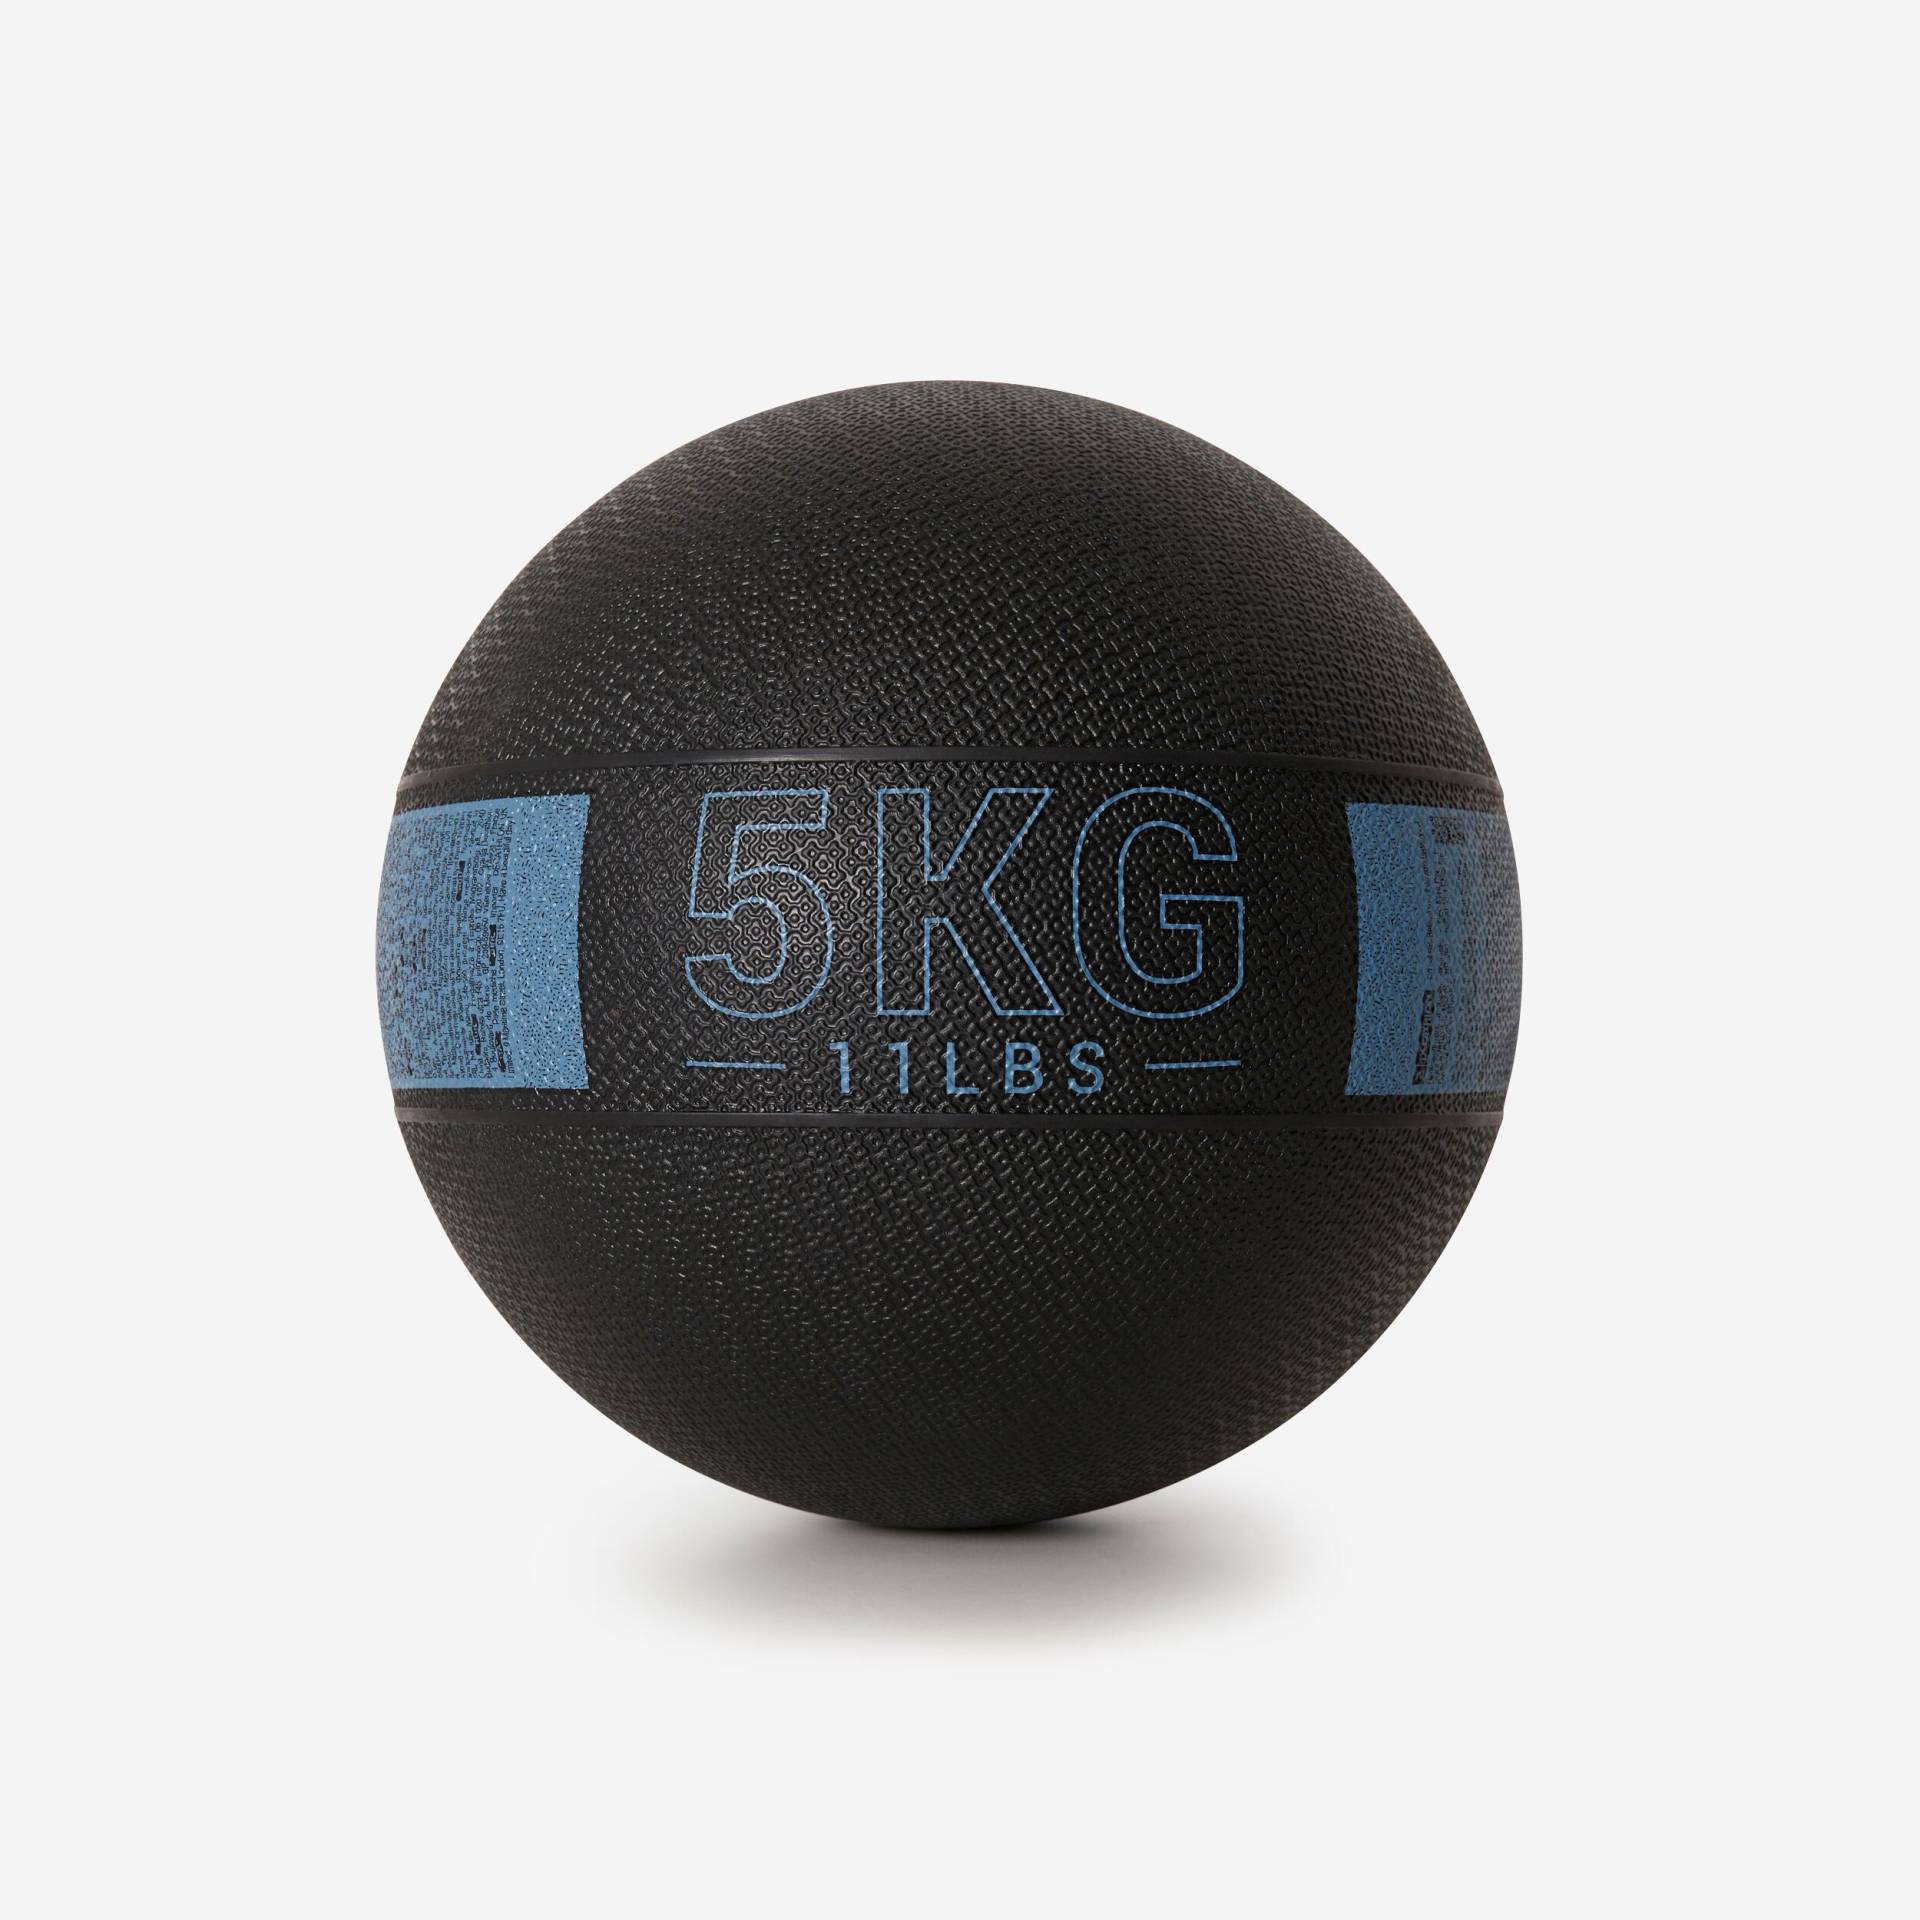 Medizinball 5 kg Gummi - schwarz/blau von Domyos